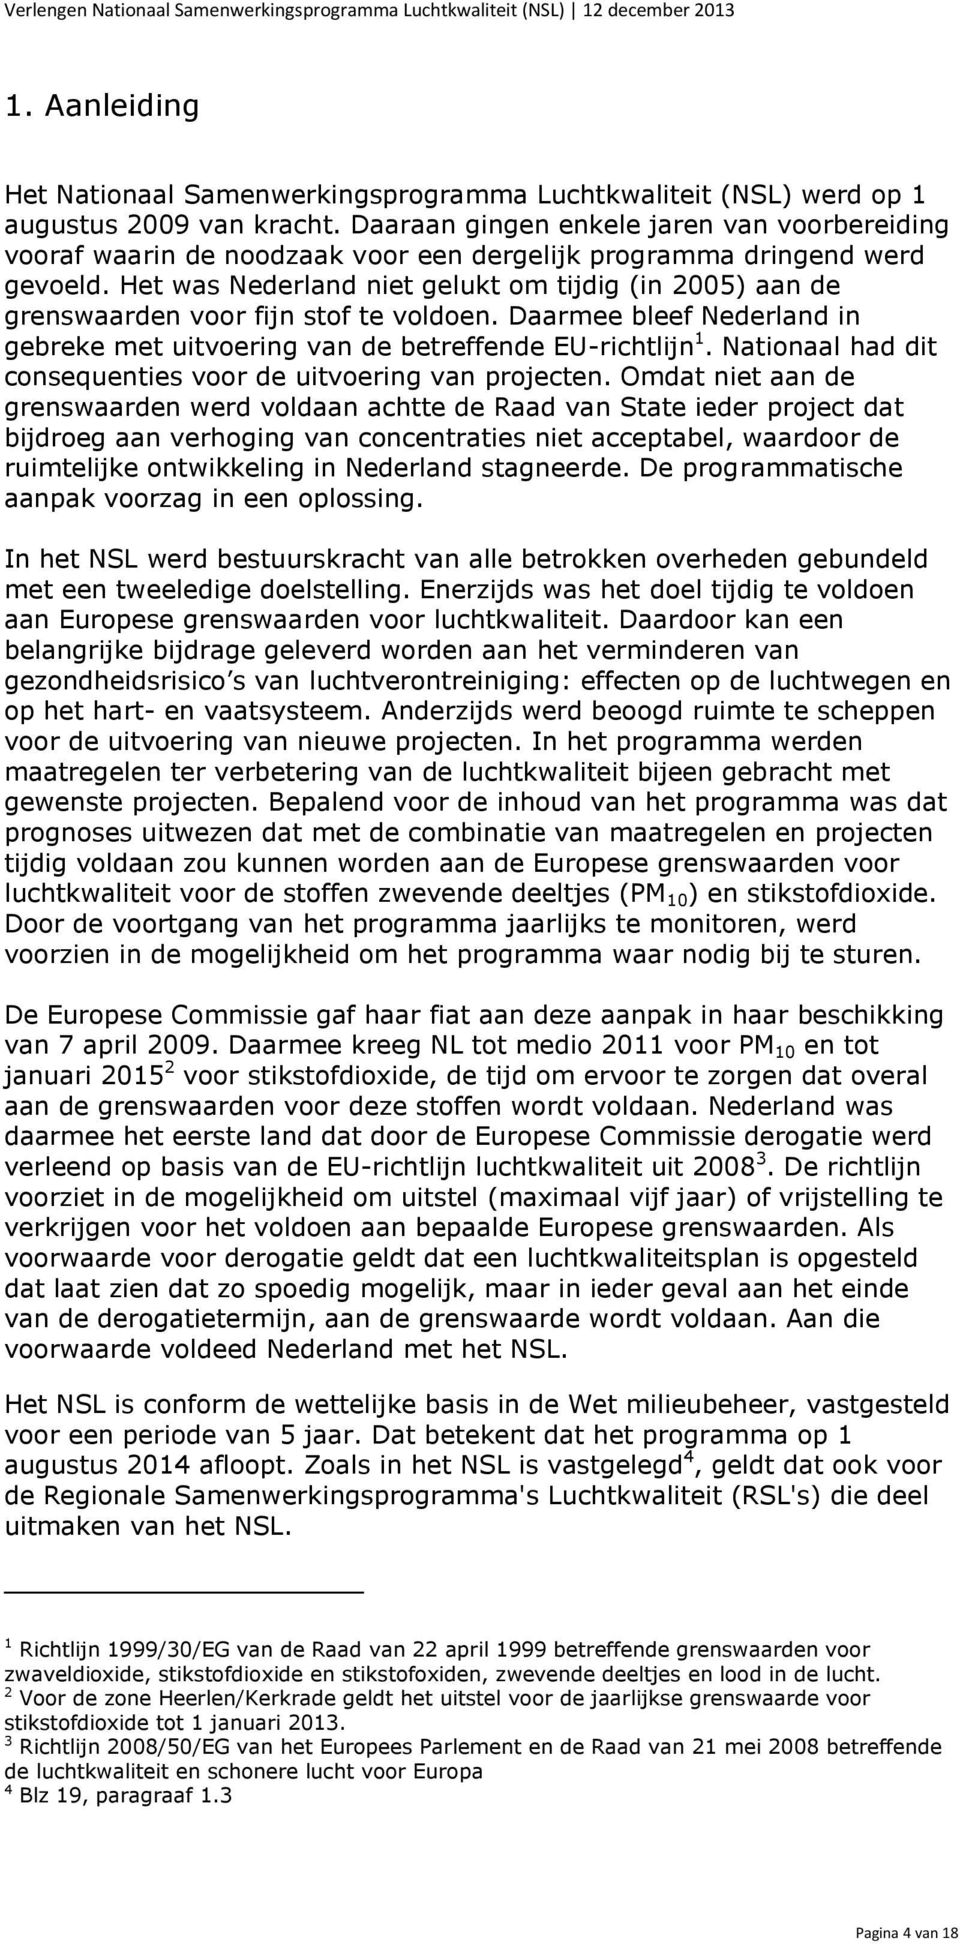 Het was Nederland niet gelukt om tijdig (in 2005) aan de grenswaarden voor fijn stof te voldoen. Daarmee bleef Nederland in gebreke met uitvoering van de betreffende EU-richtlijn 1.